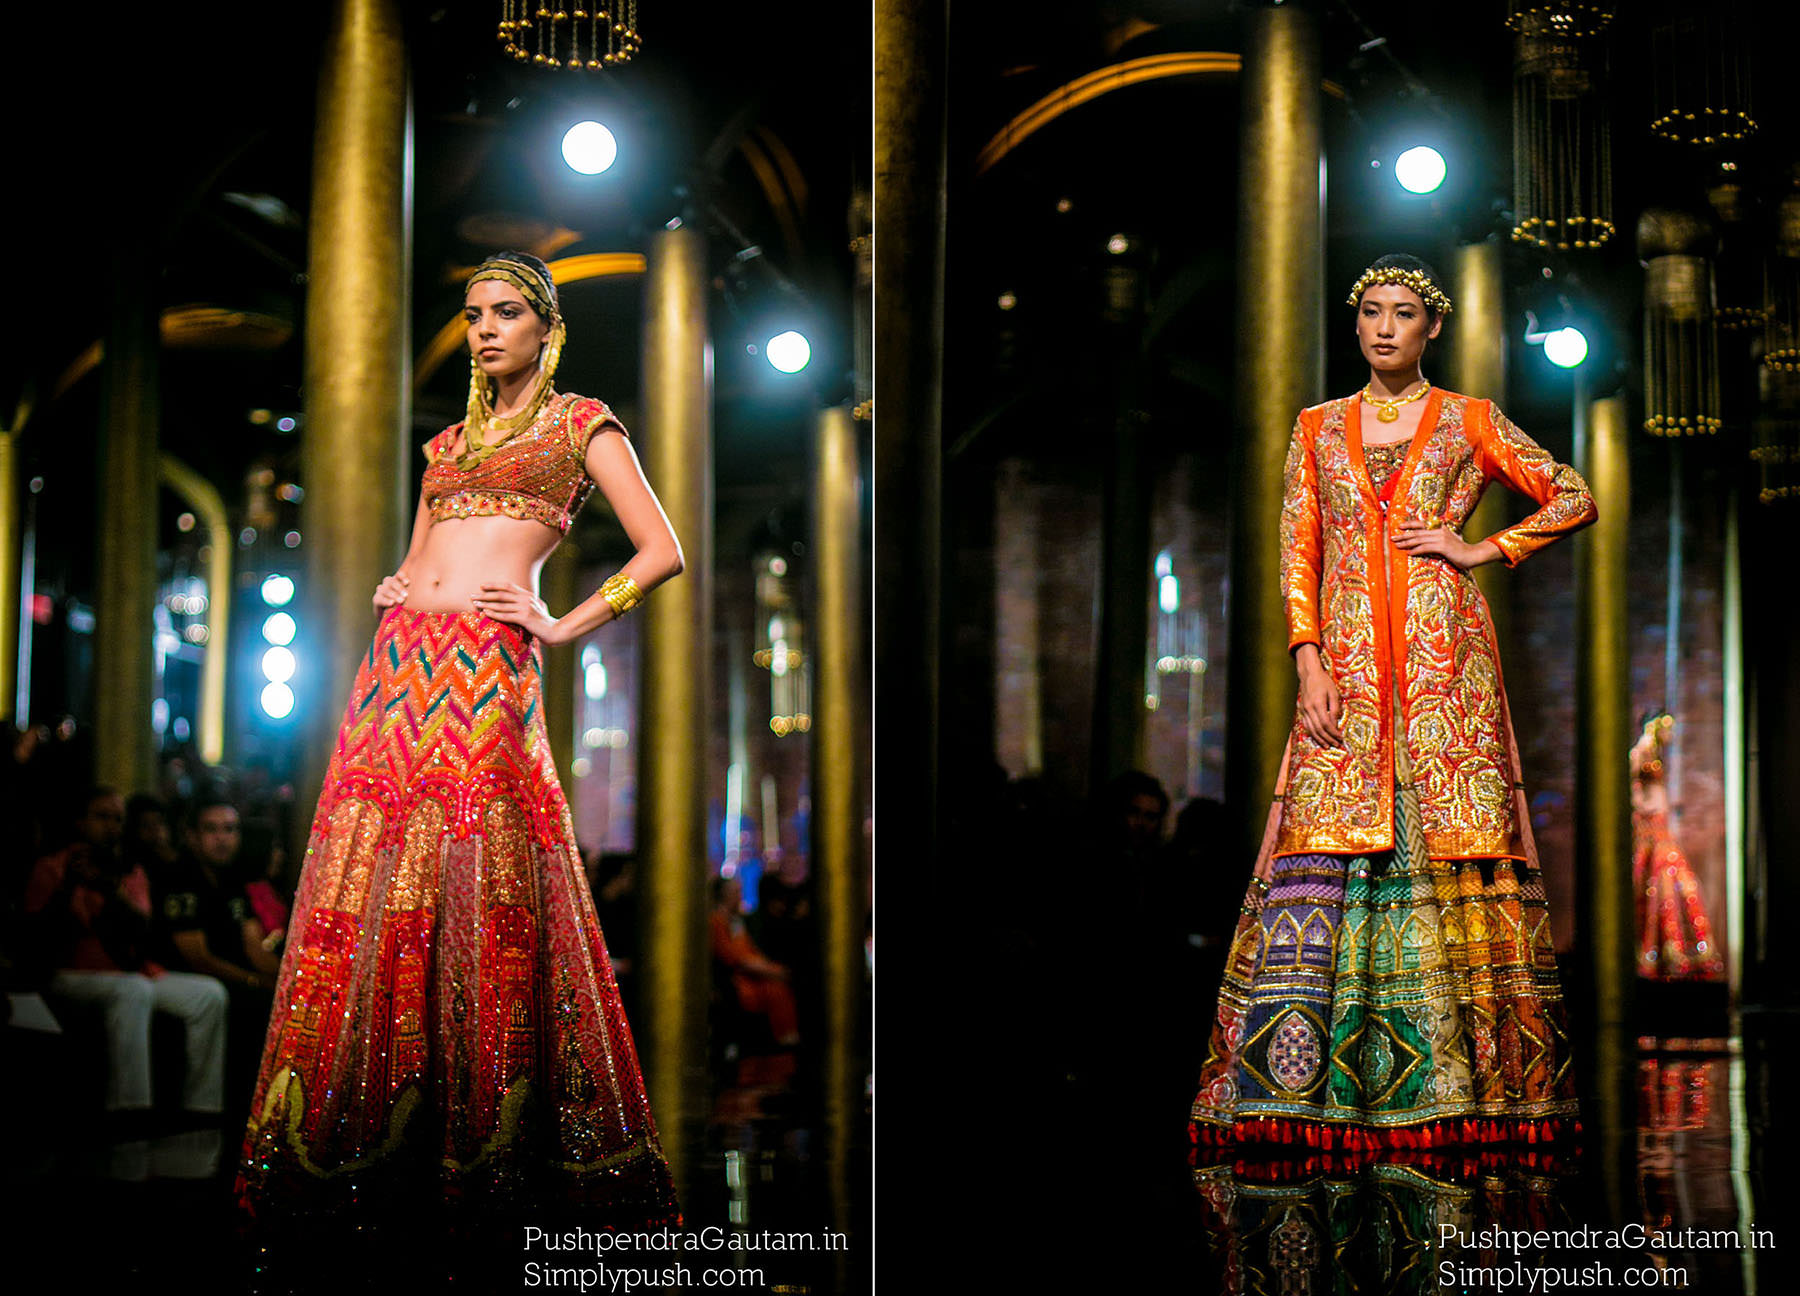 JJ Valaya at India Bridal Fashion Week Delhi Pics | India Bridal ...